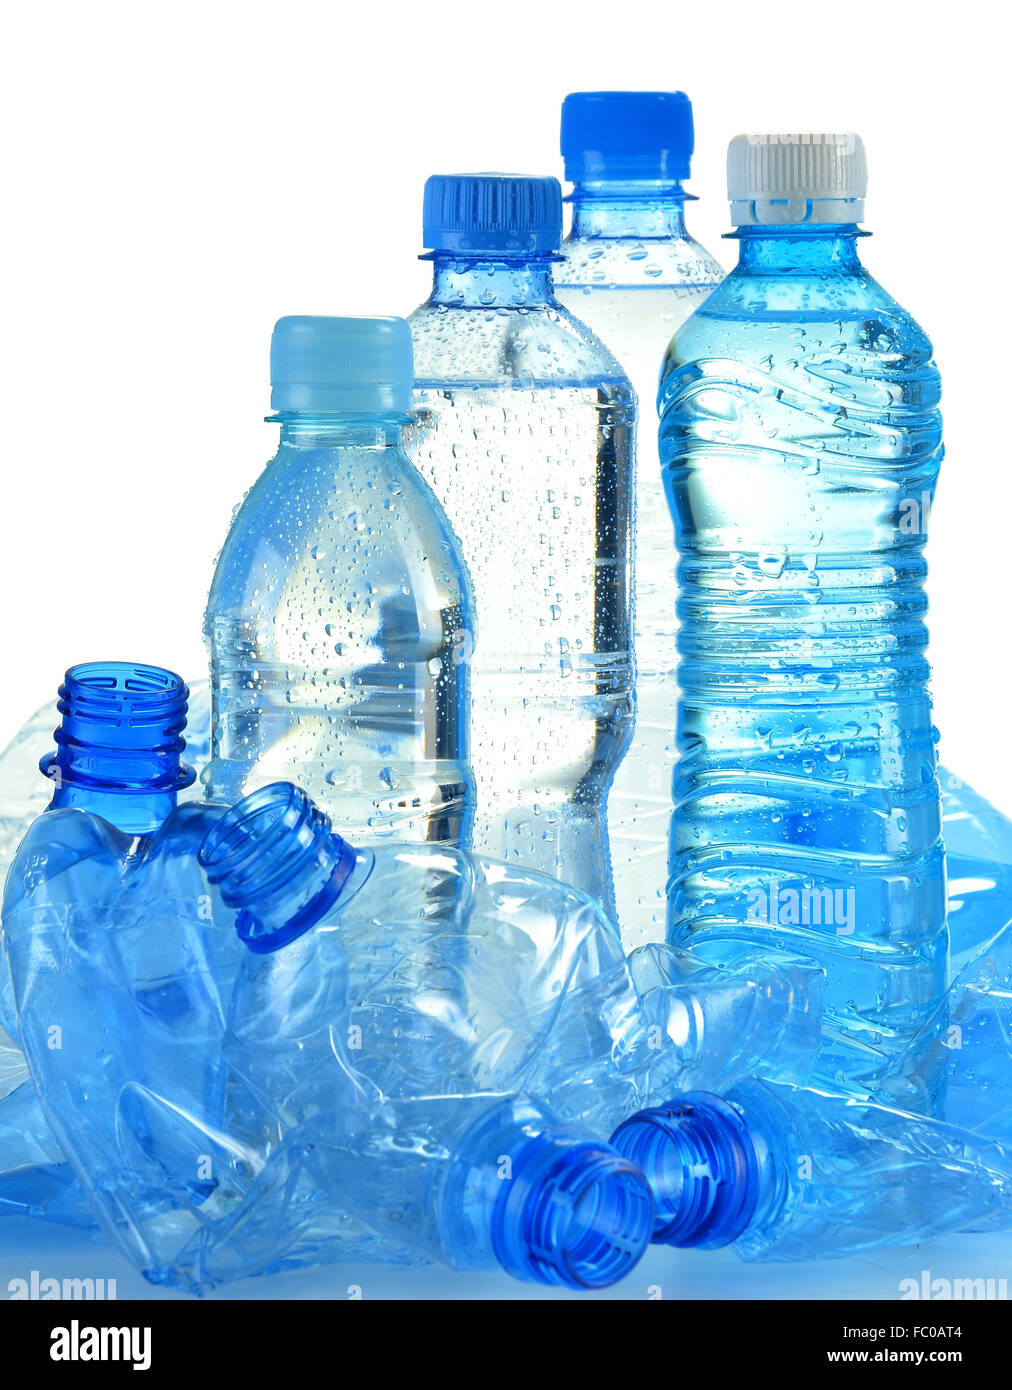 Composición con botellas de plástico de agua mineral. Foto de stock